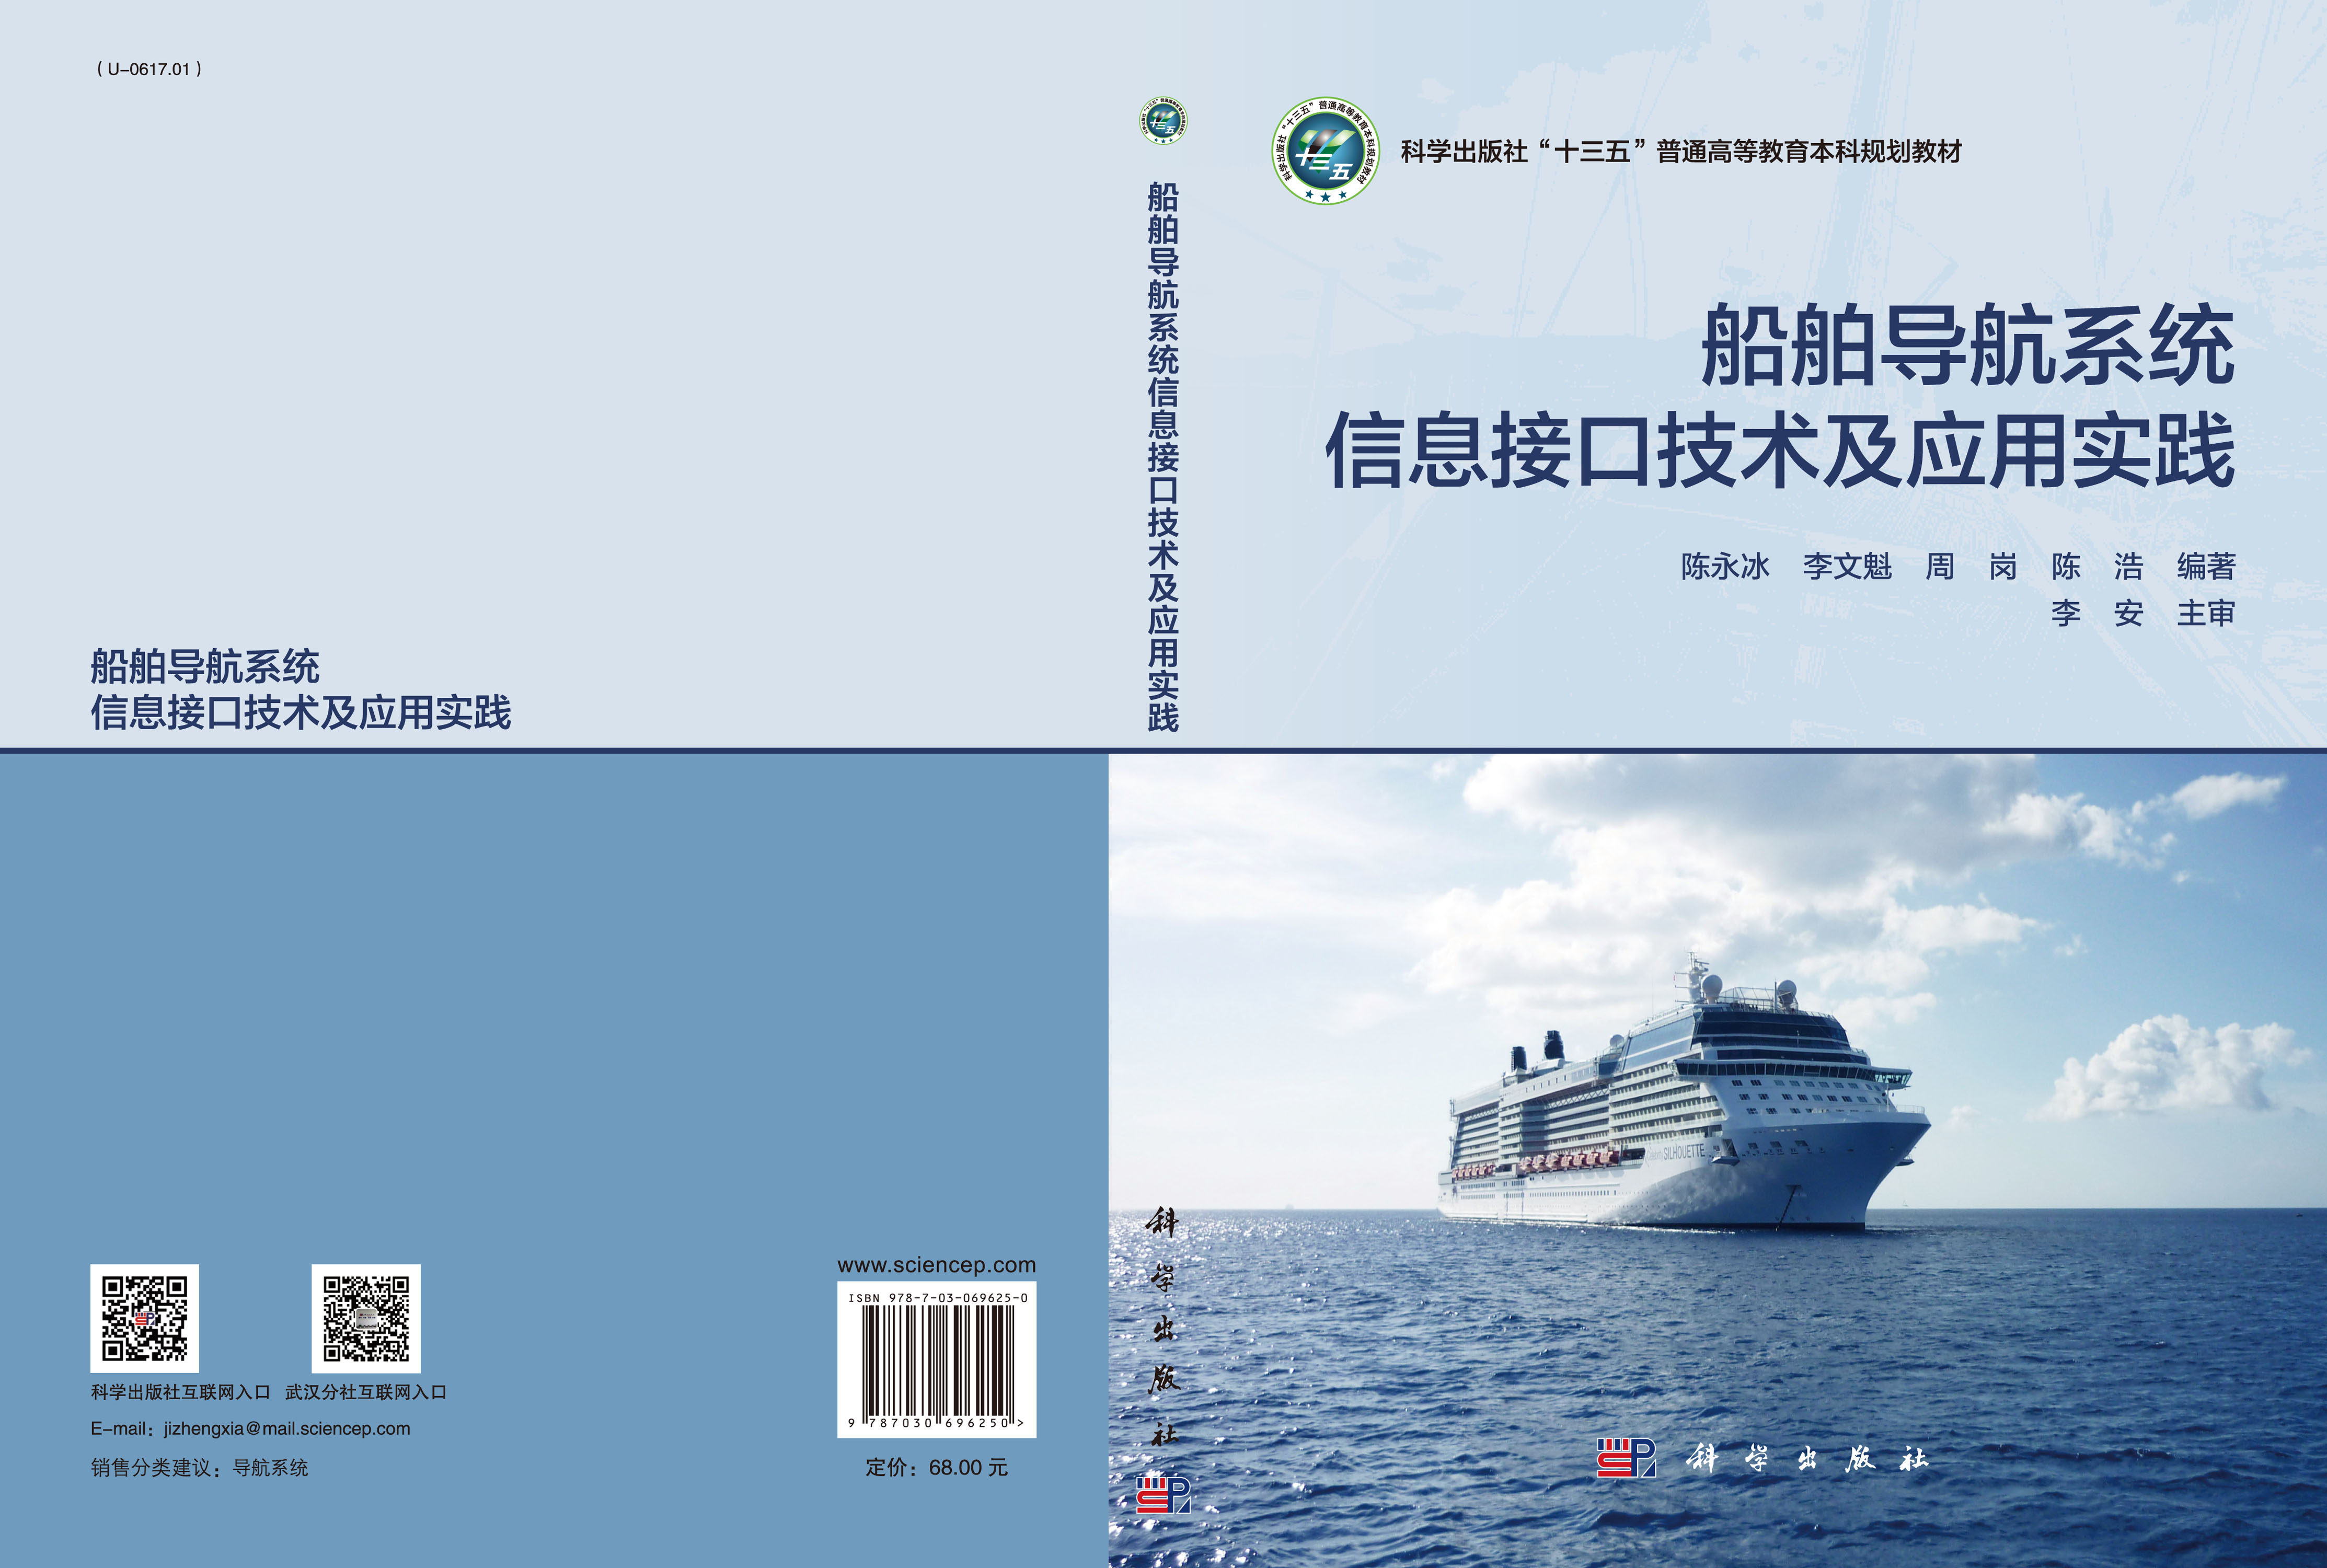 船舶导航系统信息接口技术及应用实践